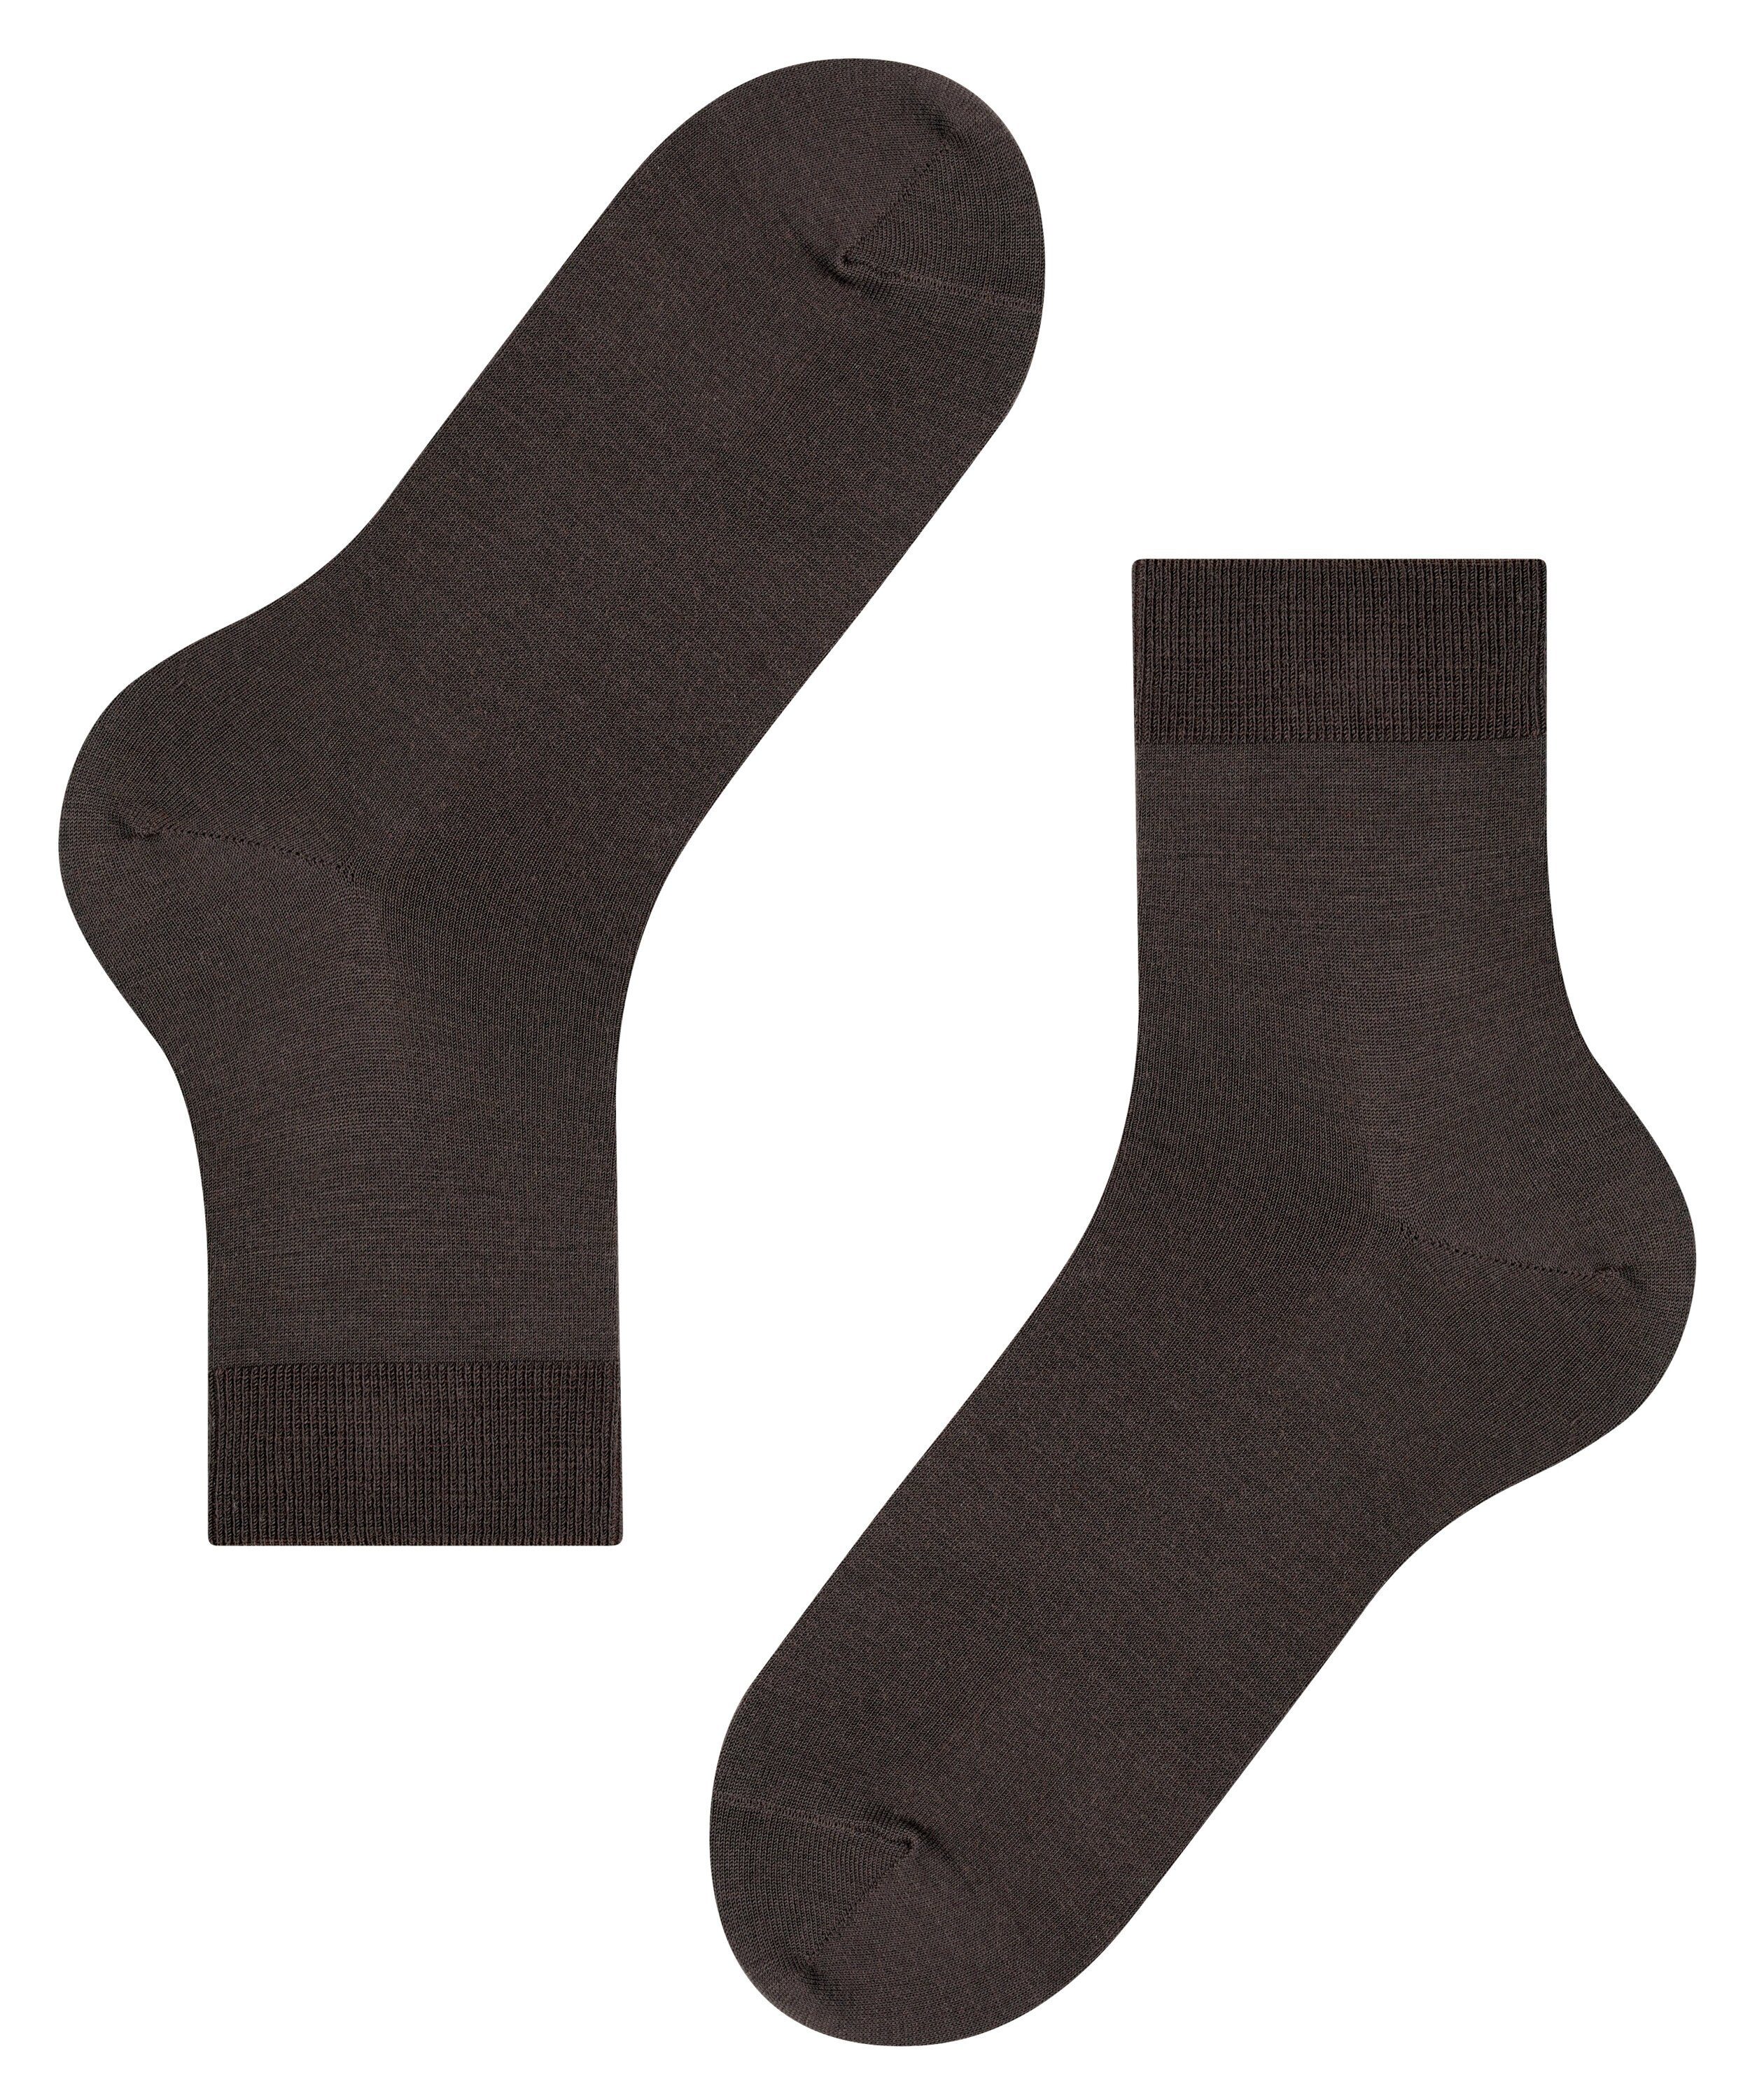 FALKE Airport brown (1-Paar) (5930) Socken